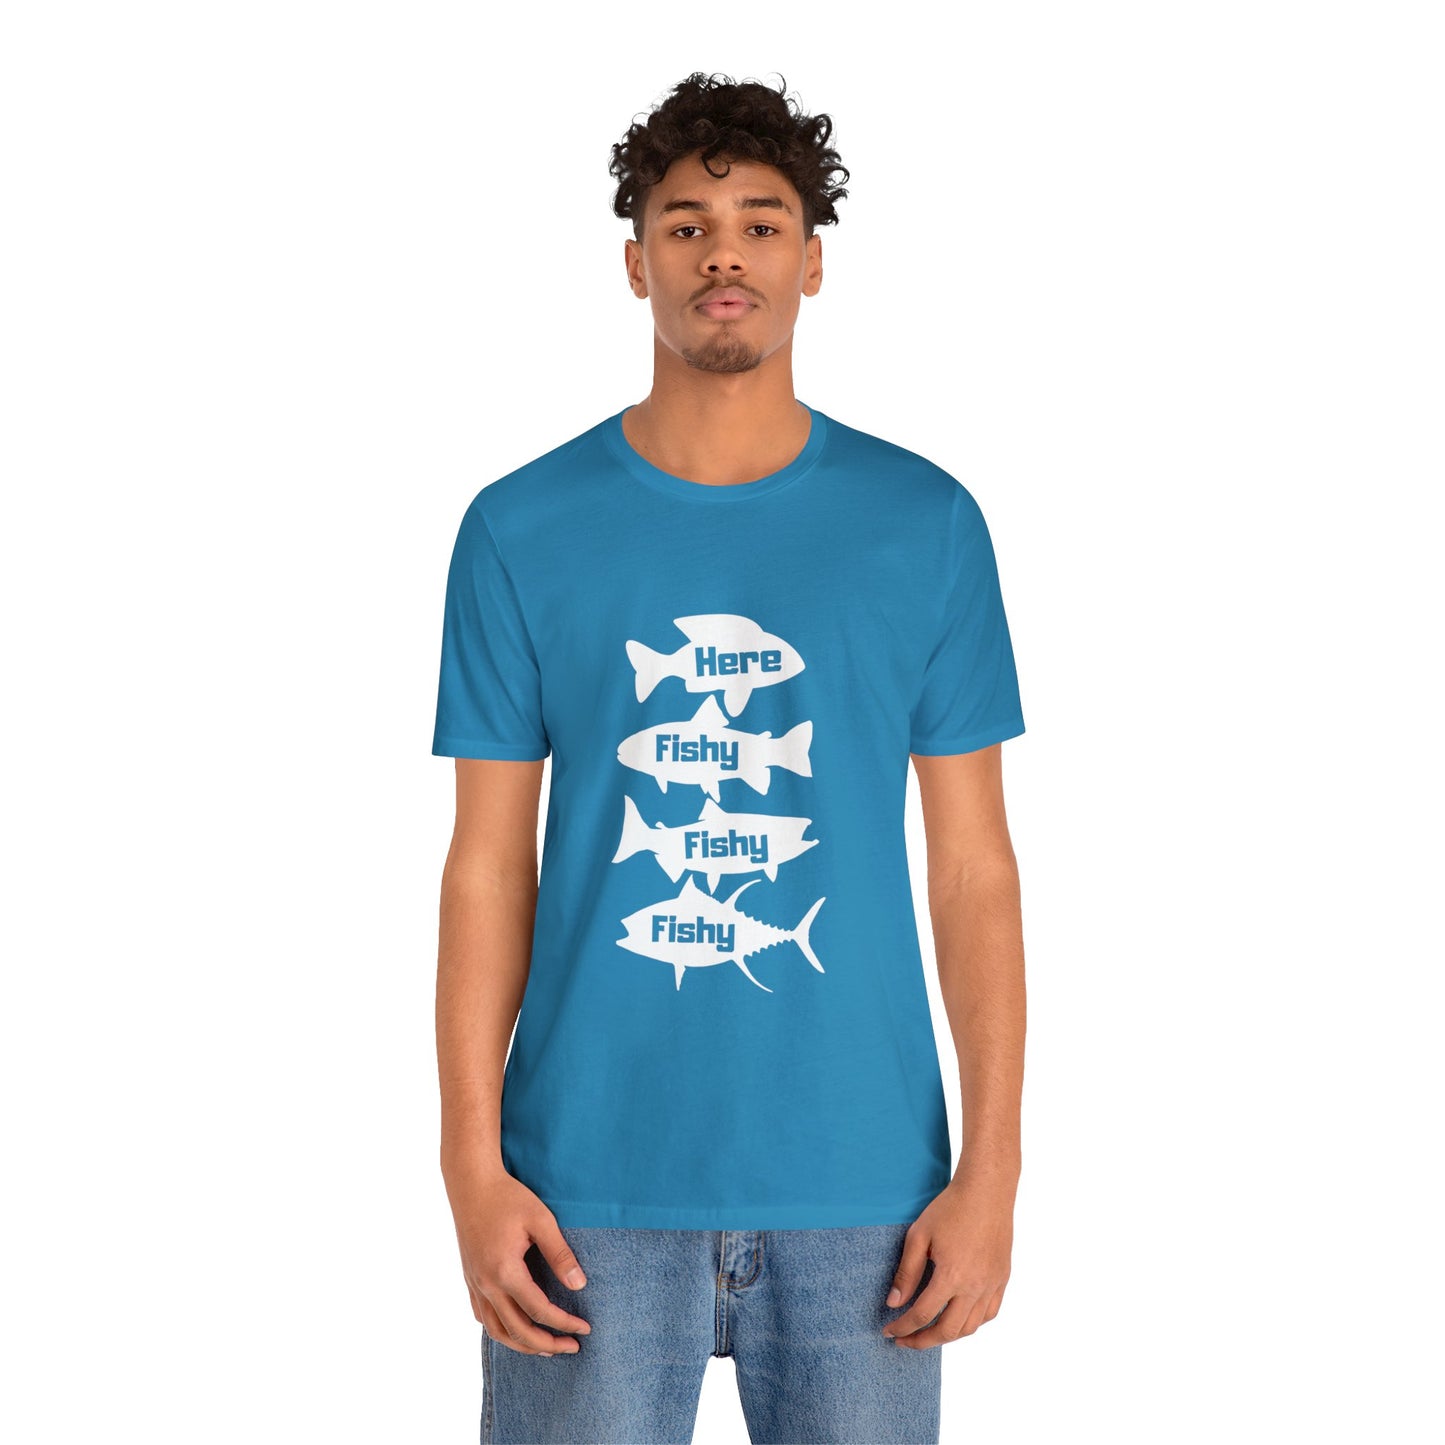 Aquí Fishy Fishy Fishy Unisex Jersey camiseta de manga corta